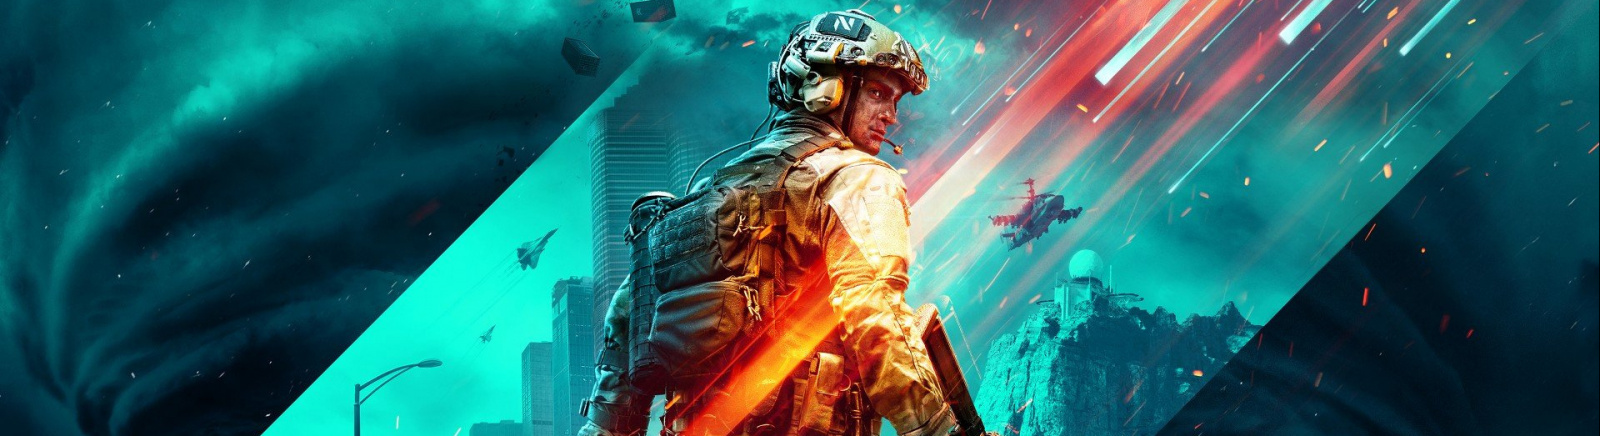 Дата выхода Battlefield 2042 (Battlefield 6)  на PC, PS5 и Xbox Series X/S в России и во всем мире